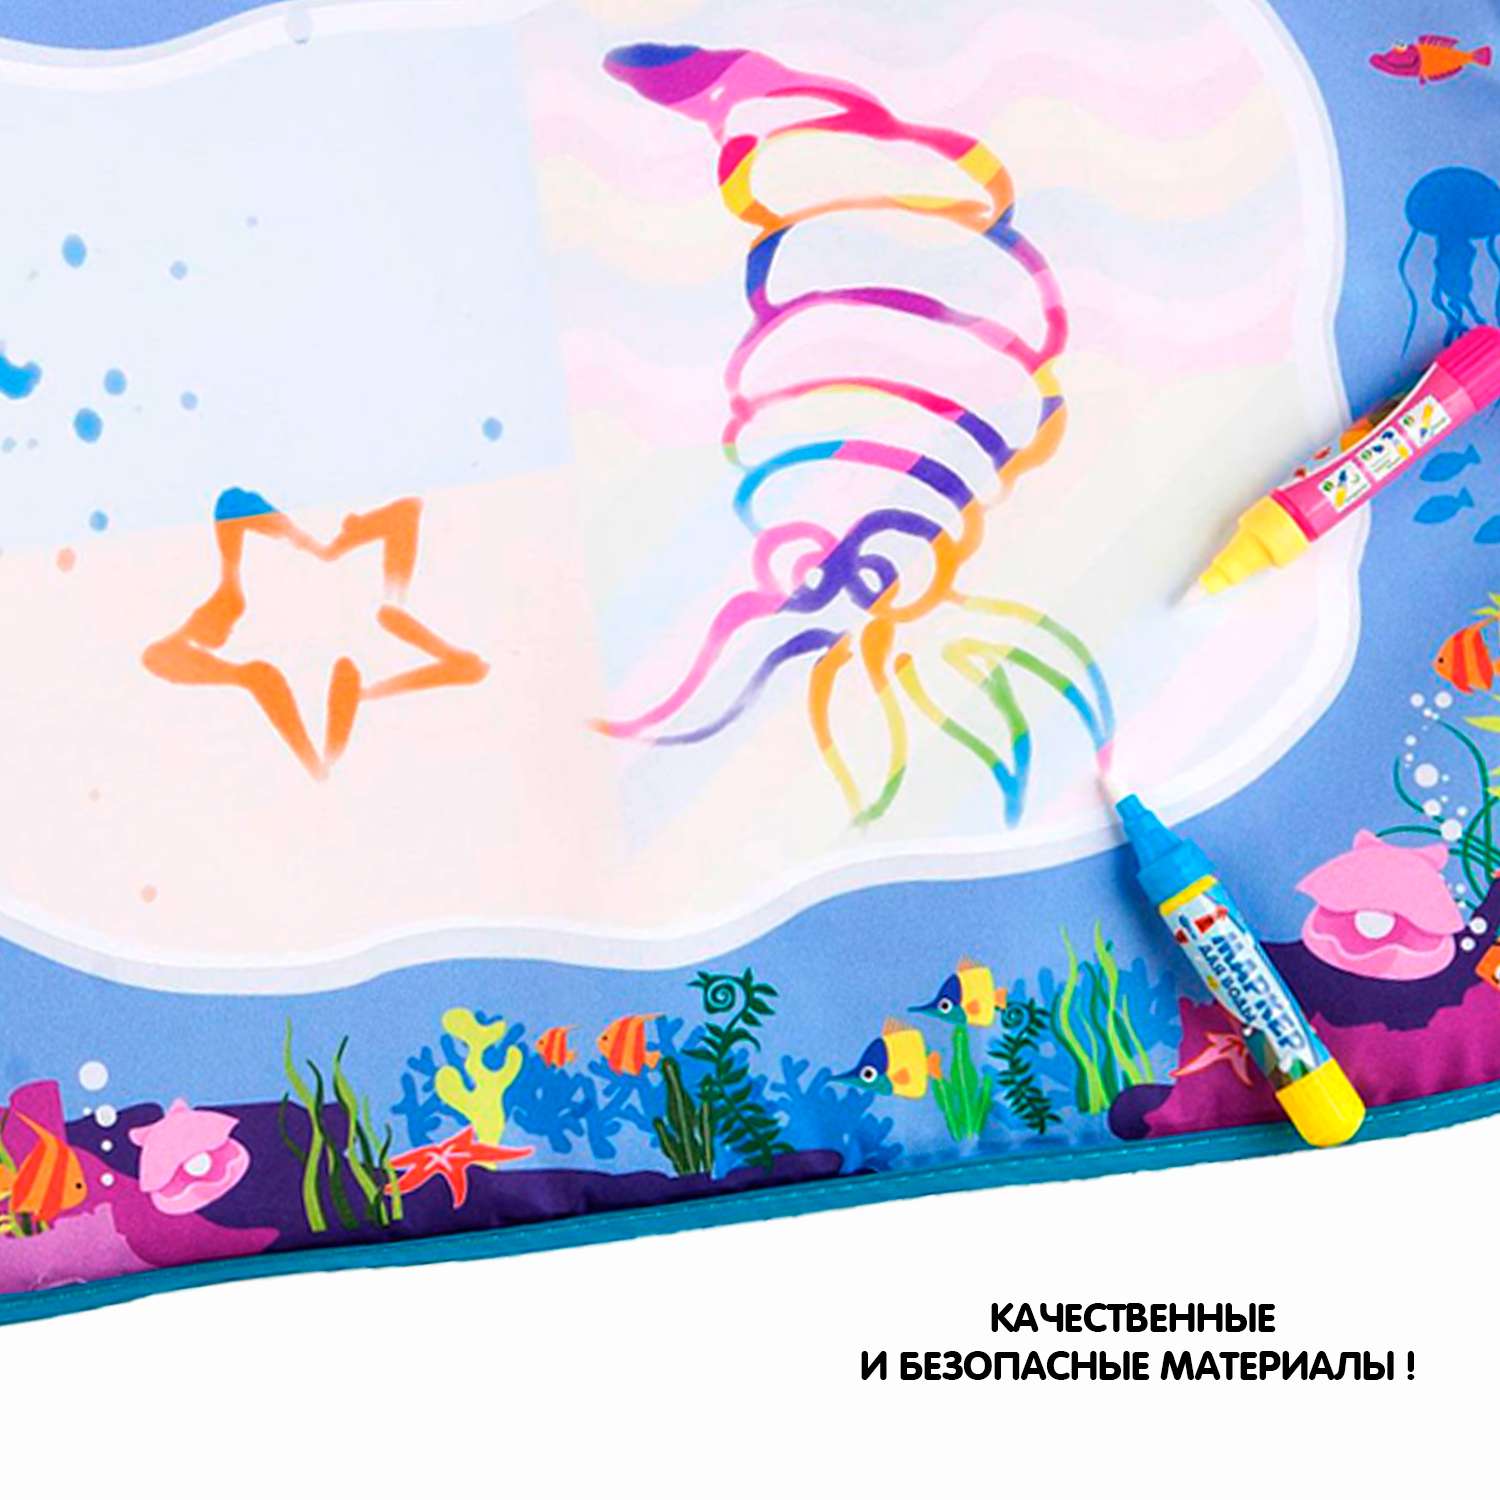 Водная раскраска BONDIBON многоразовый коврик Подводный Мир со световым эффектом серия Baby you - фото 12